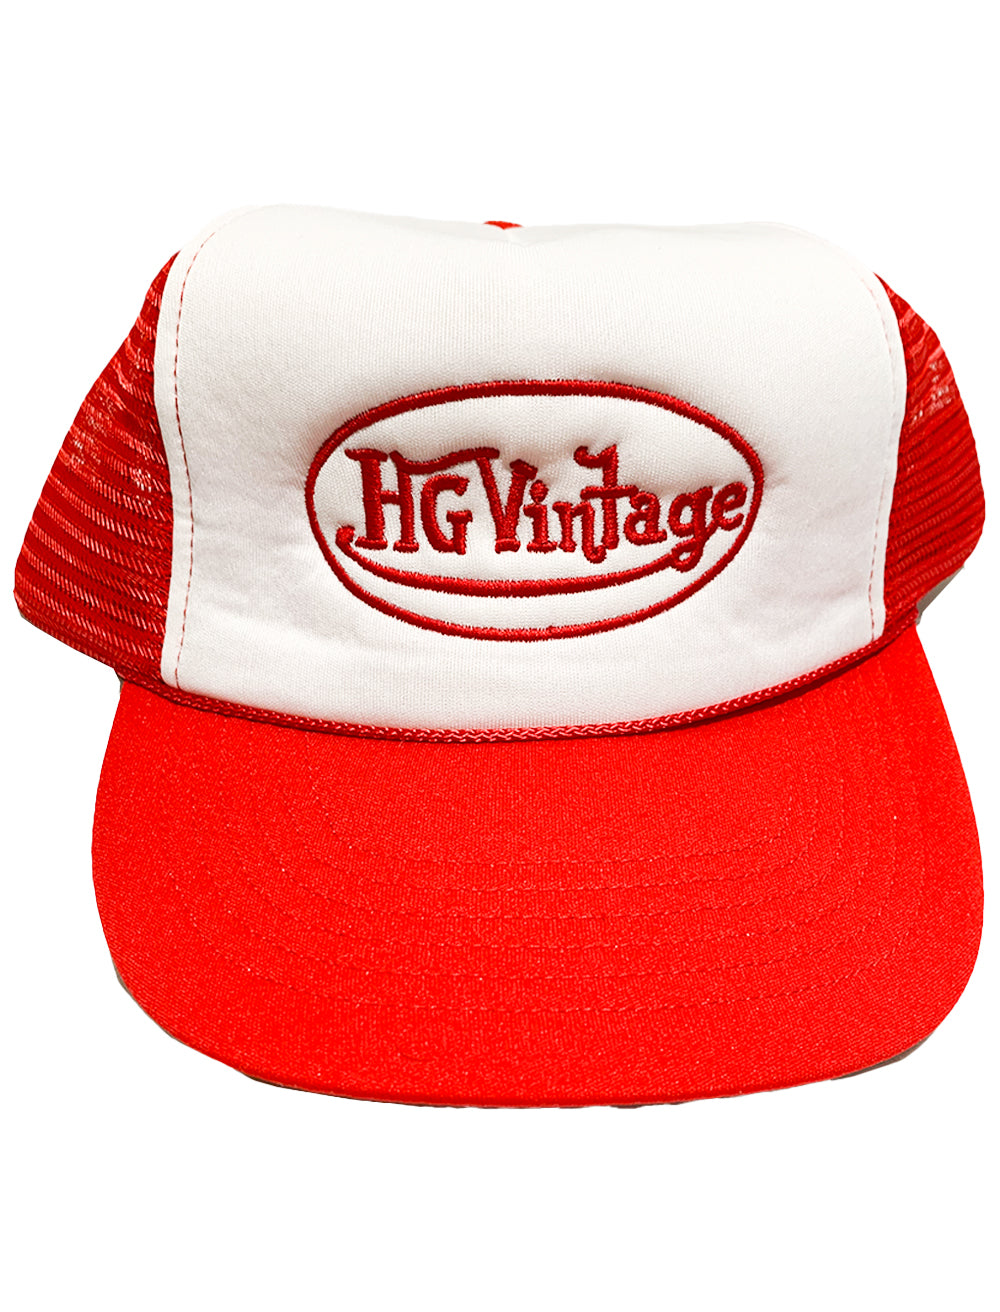 HG Vintage Red Dutch Trucker Hat